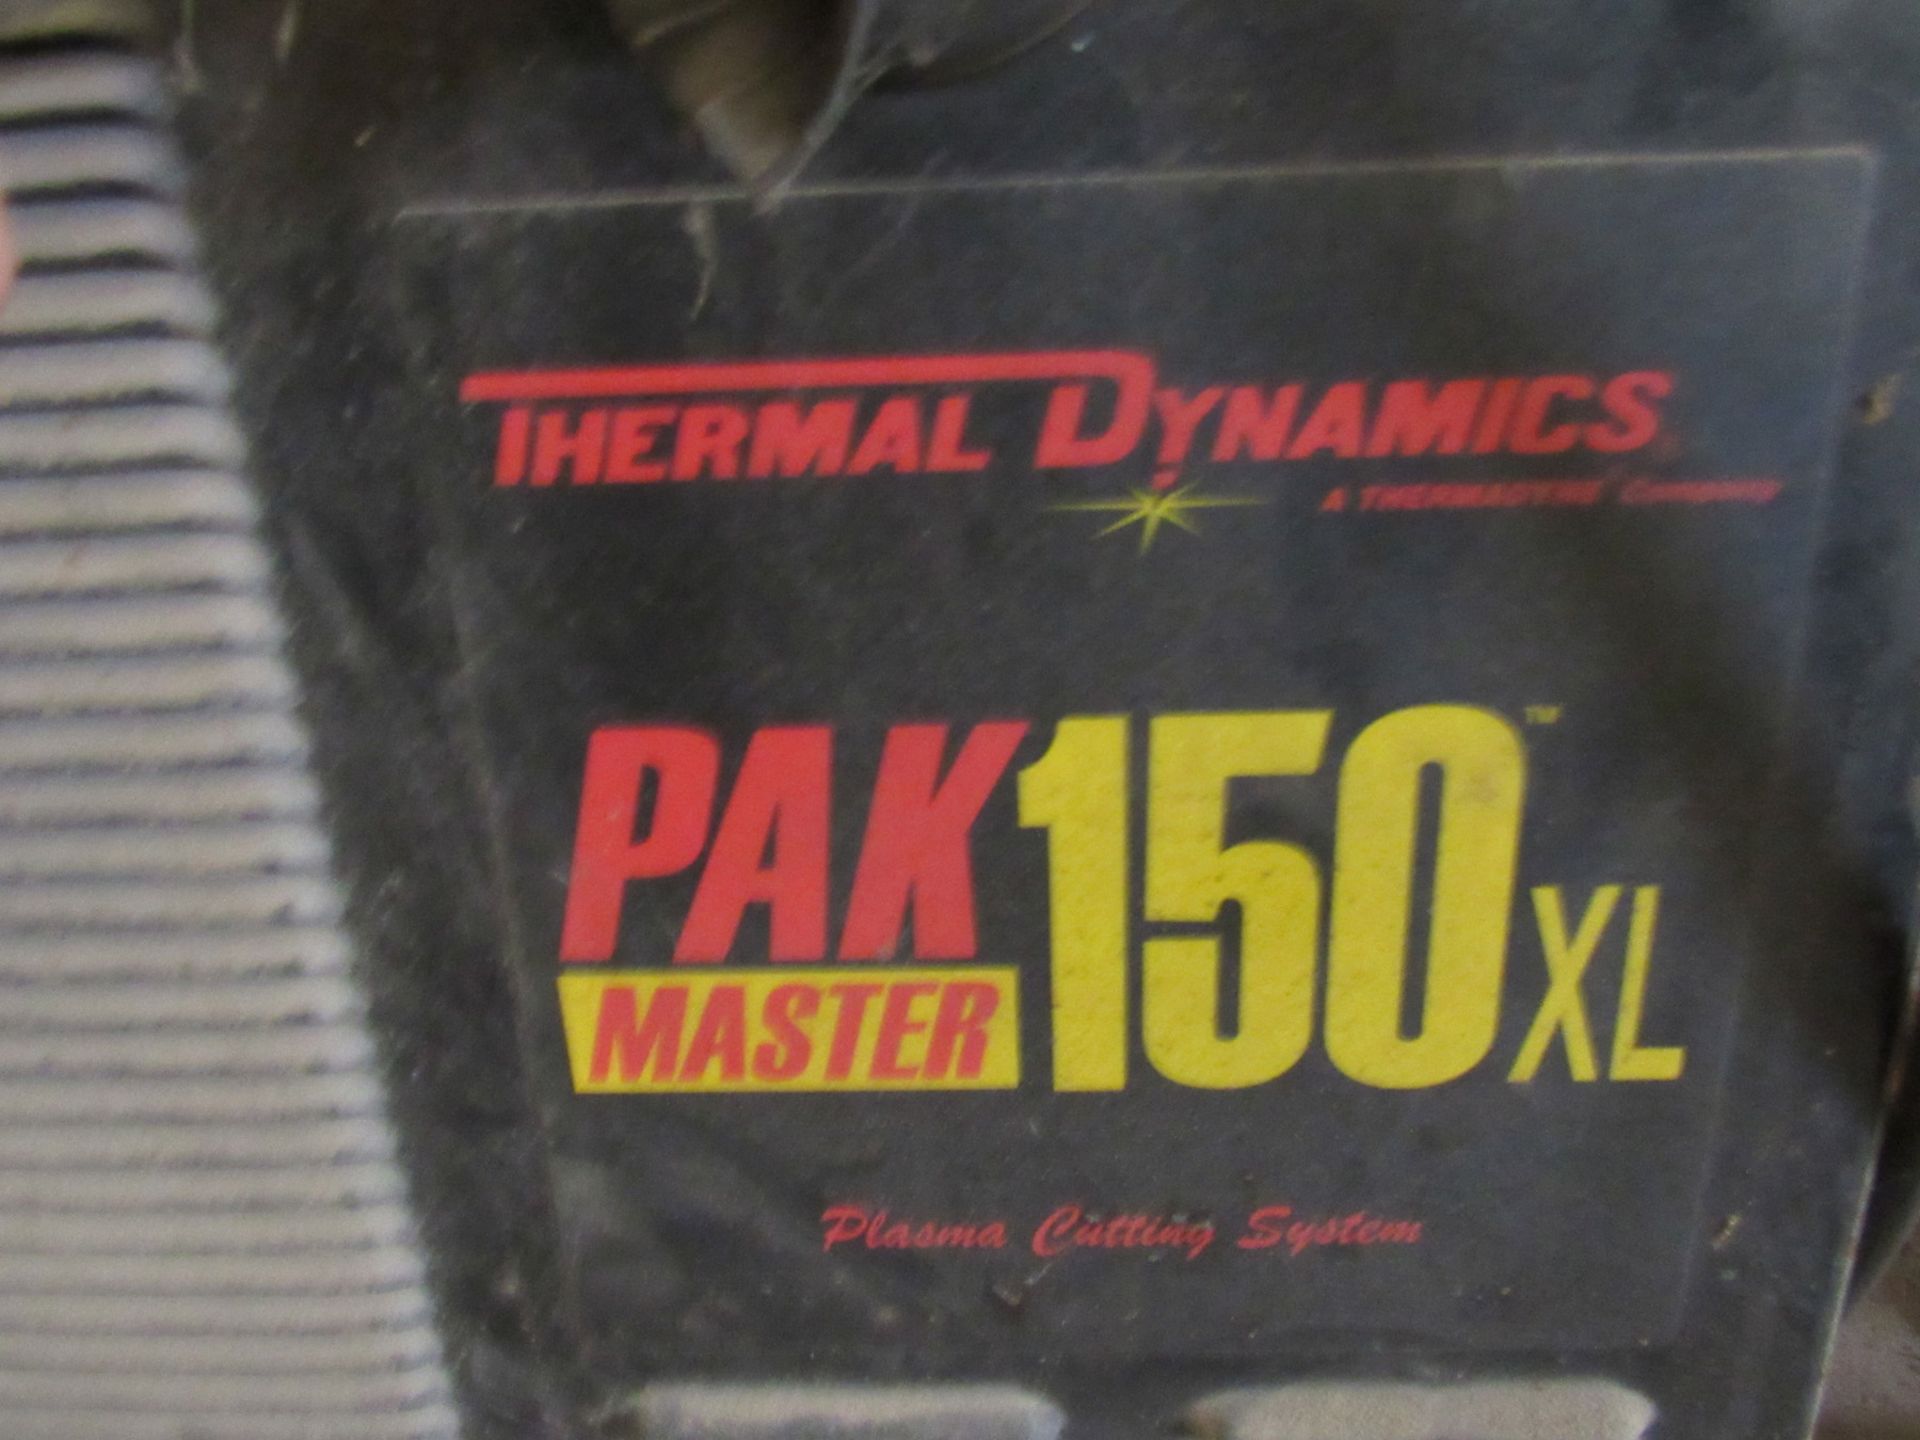 Thermal Dynamics Pakmaster 150XL - Image 3 of 5